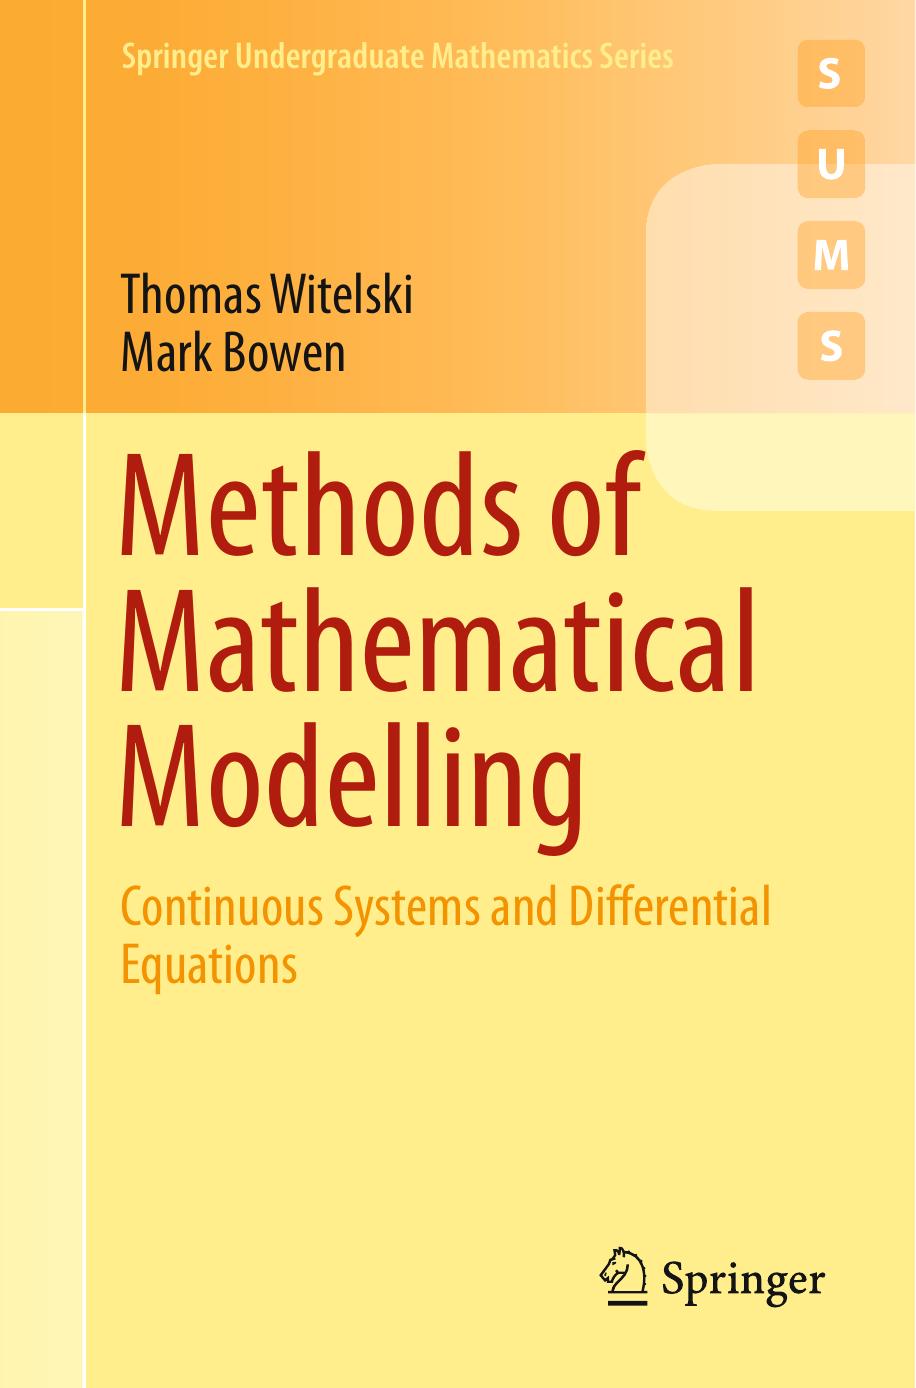 Methods of Mathematical Modelling by Thomas Witelski & Mark Bowen